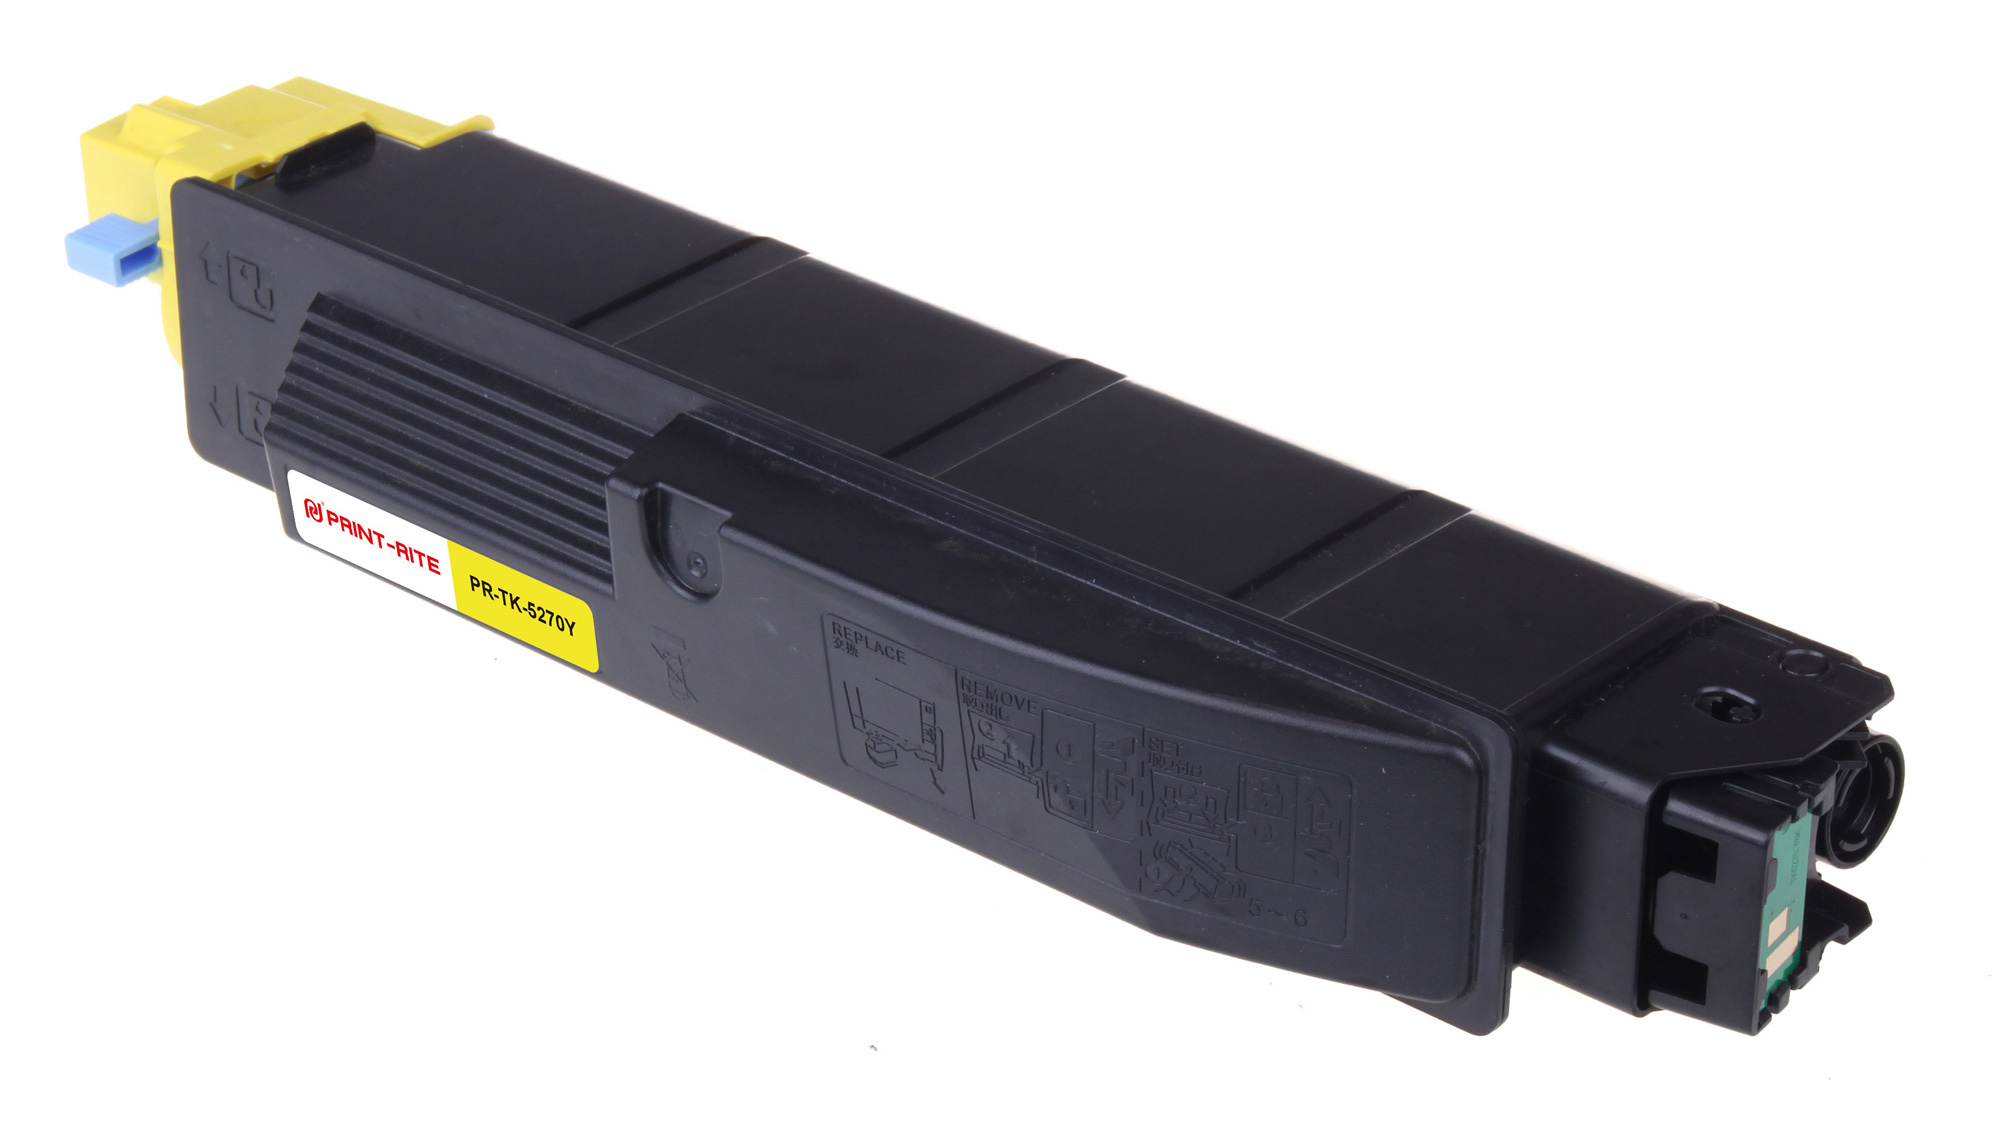 Картридж лазерный Print-Rite TFKAMTYPRJ PR-TK-5270Y TK-5270Y желтый (6000стр.) для Kyocera Ecosys P6230cdn/M6230cidn/M6630cidn